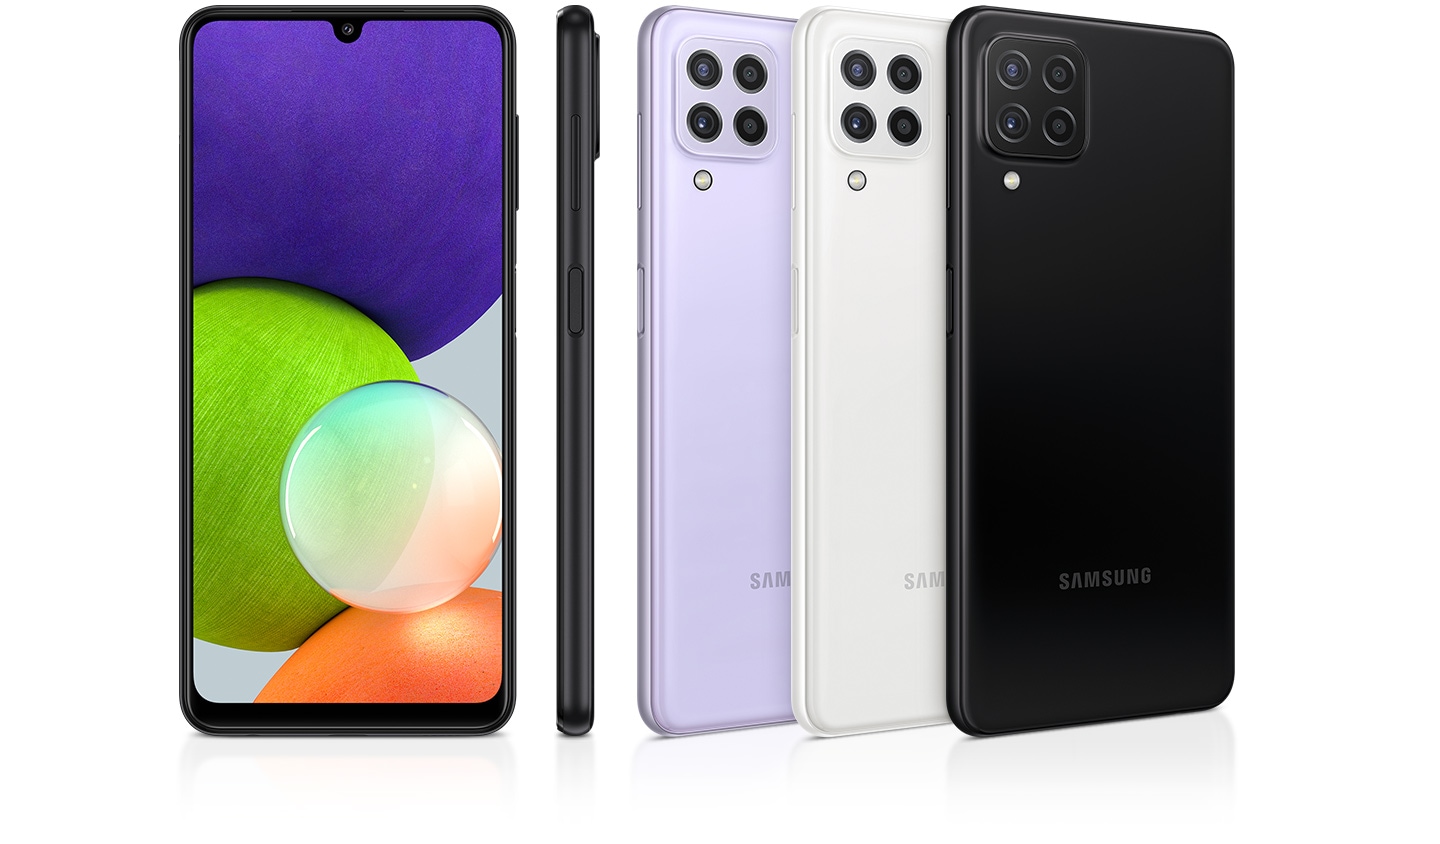 Tre blanke mobiltelefoner som kan sees bakfra i svart, hvitt og fiolett, sammen med en profil og forfra som belyser den premium glansfinishen.